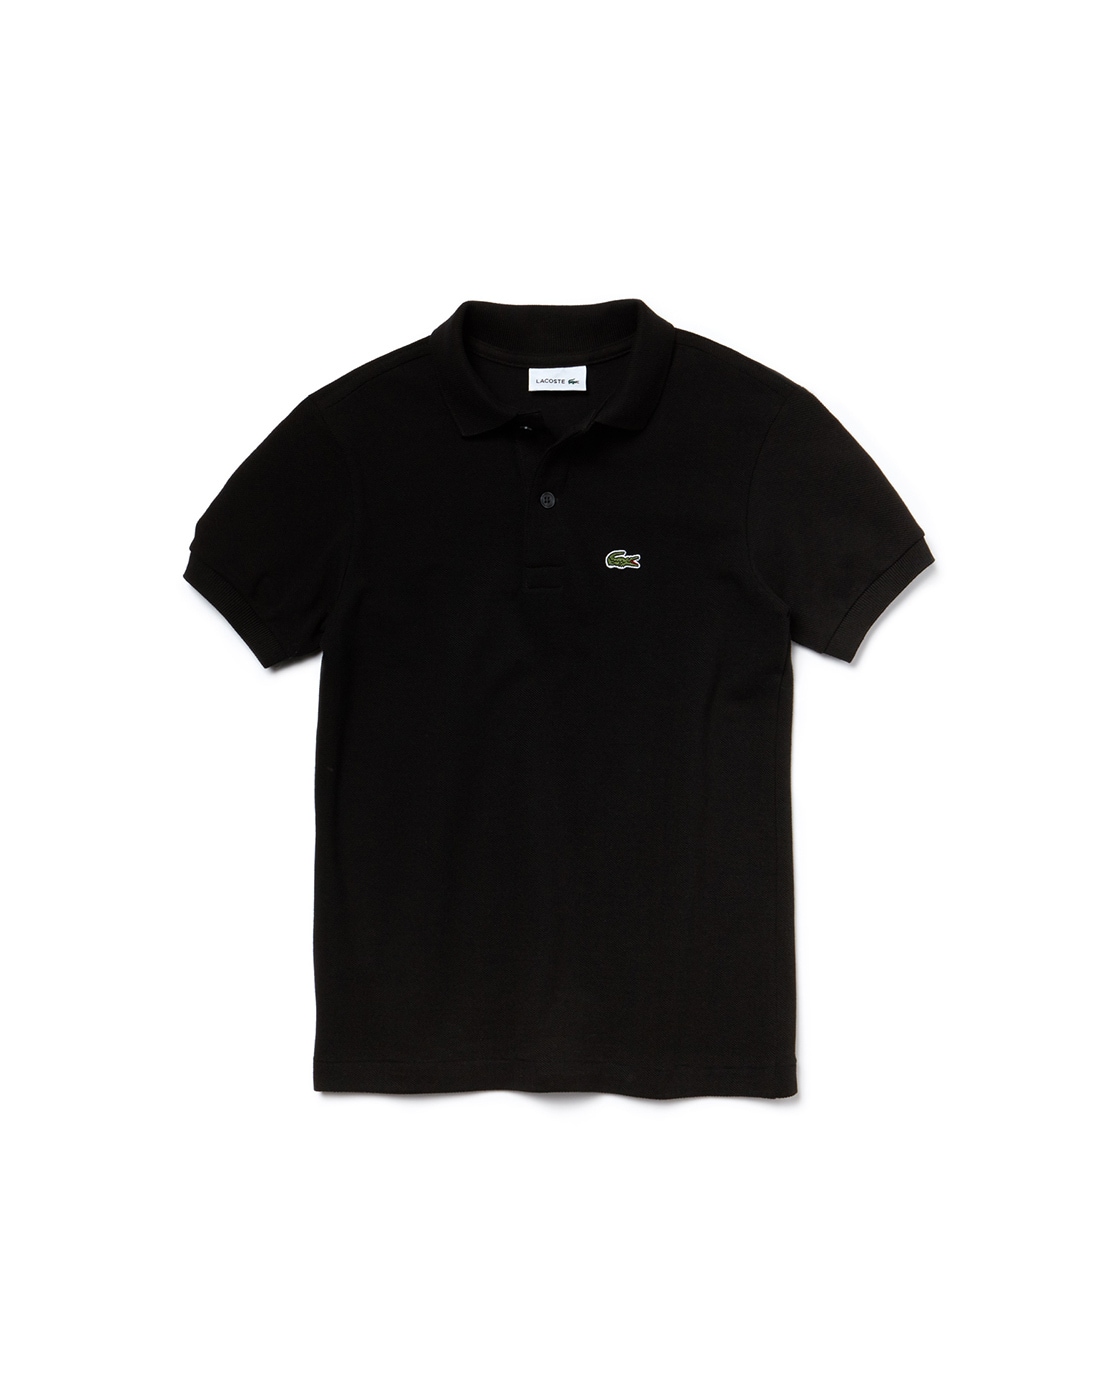 Black Tshirts for Boys | Ajio.com